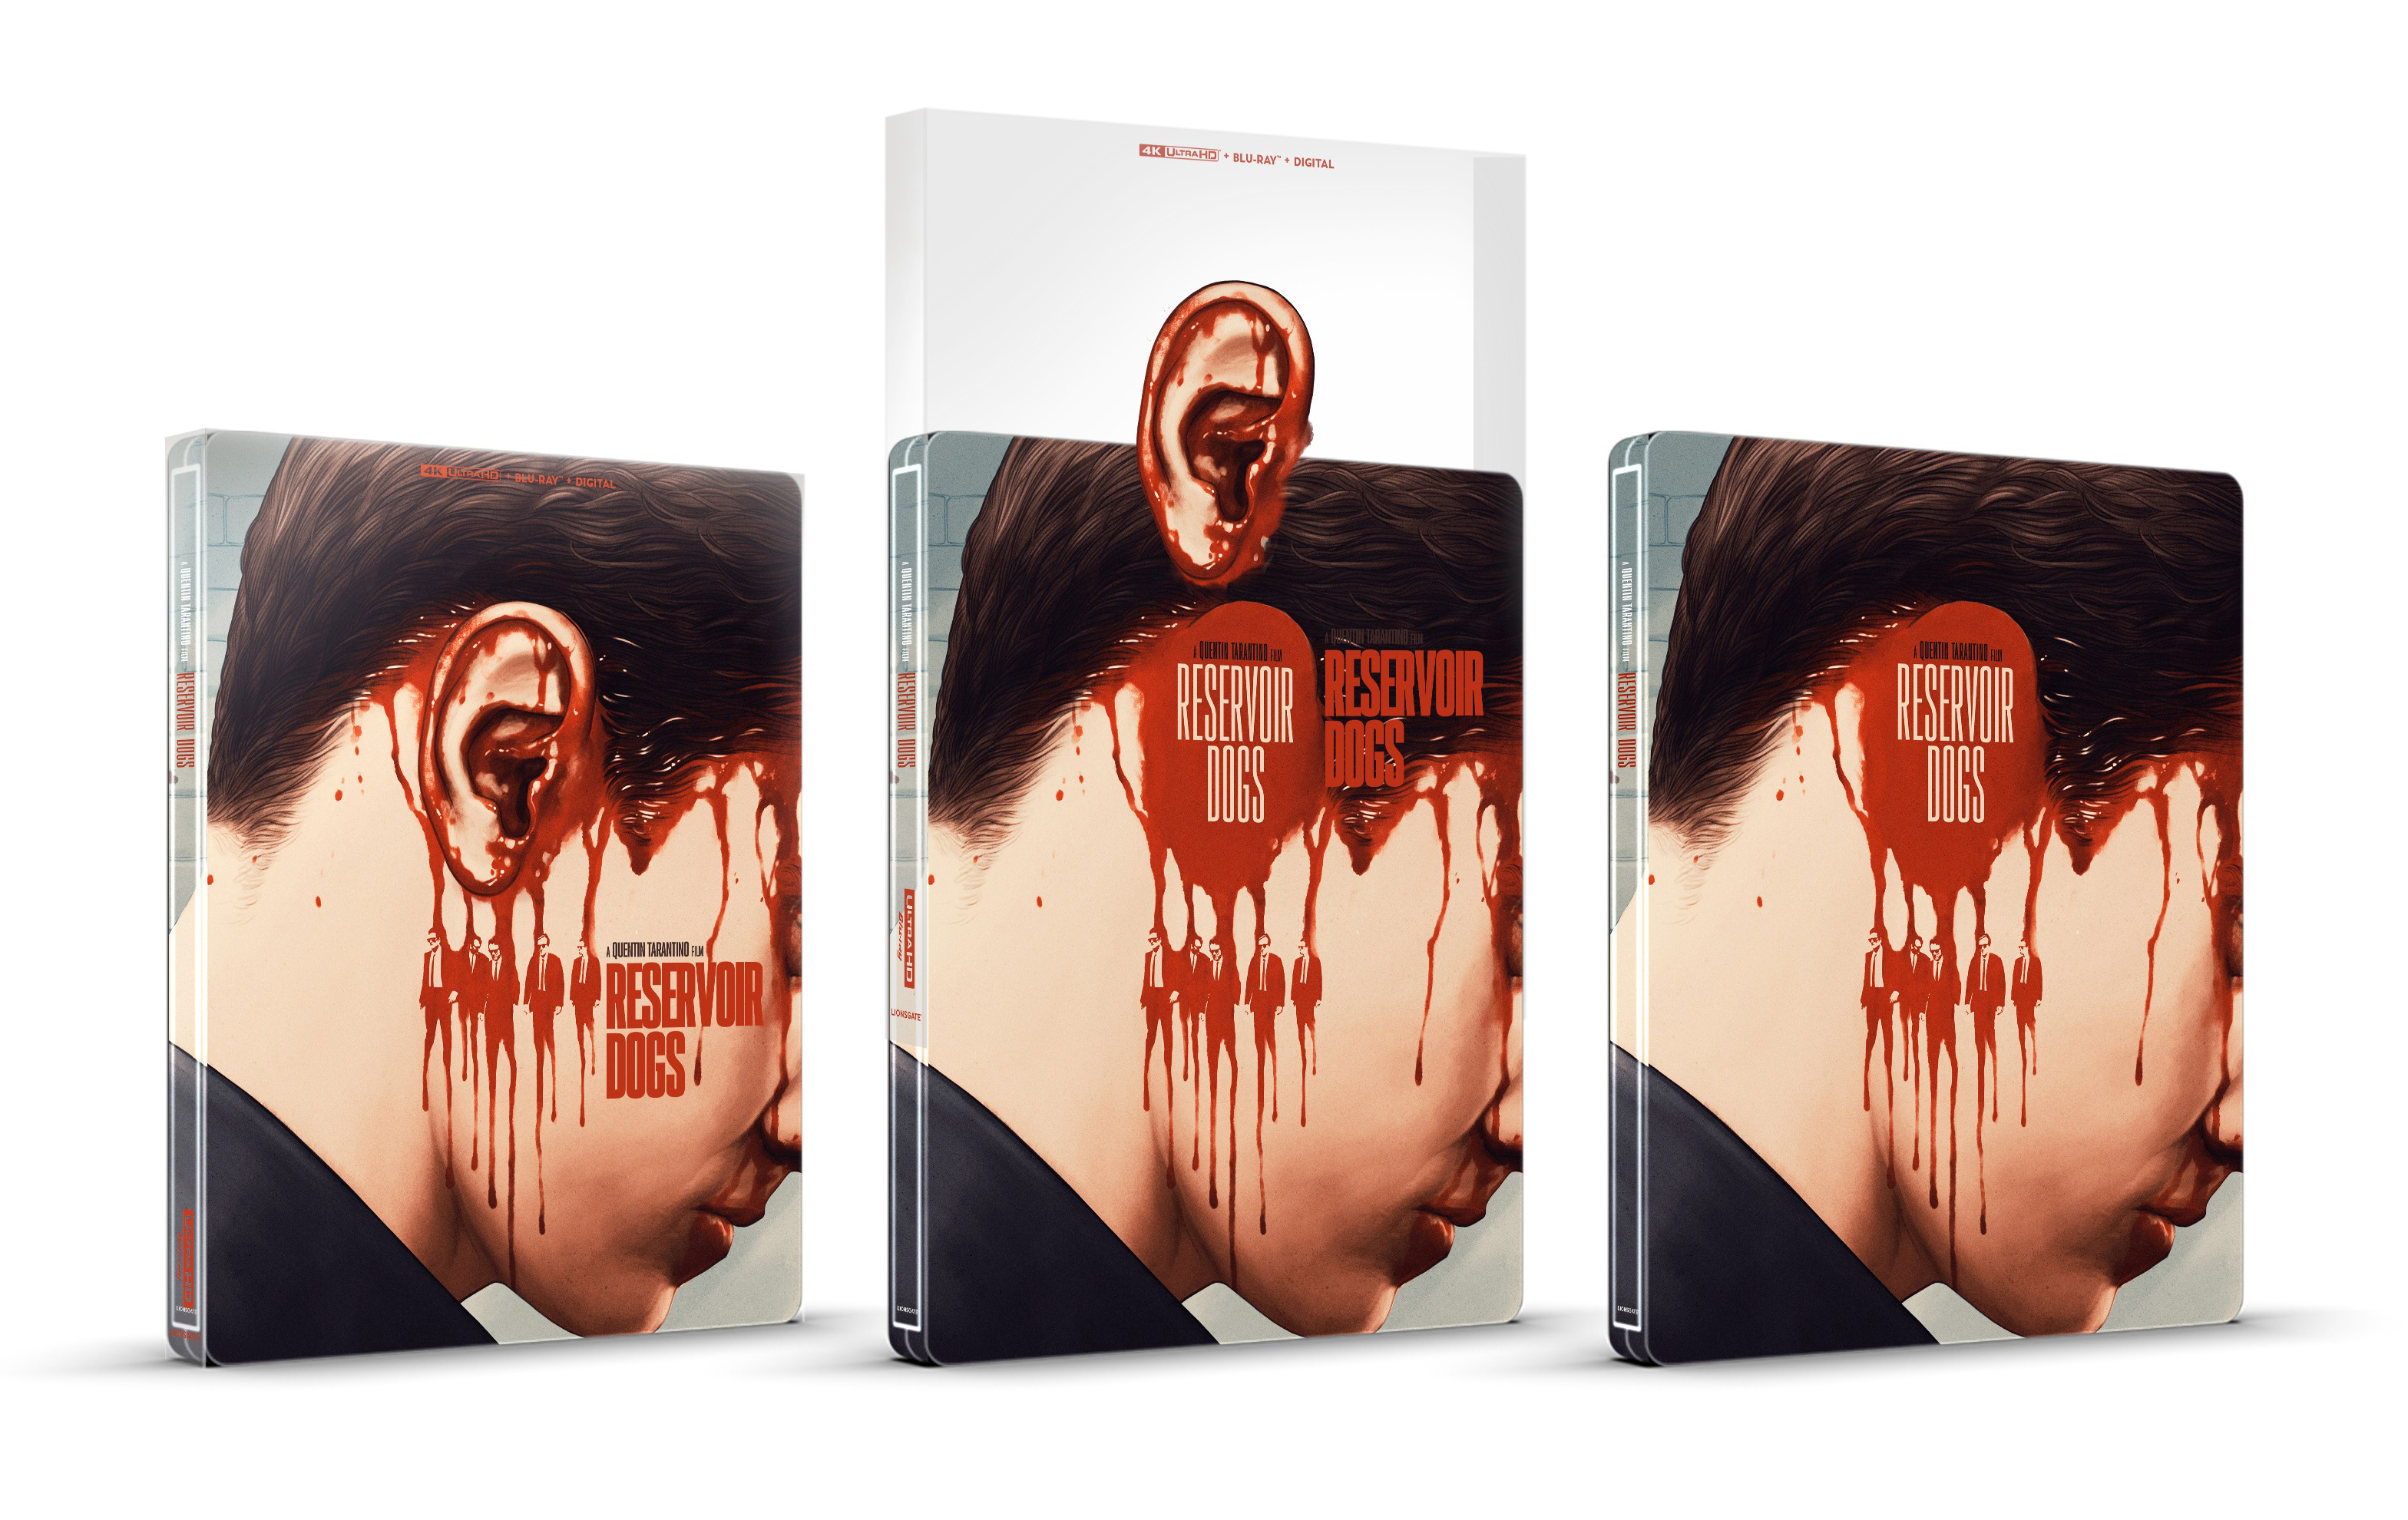 Reservoir Dogs [SteelBook] [Includes Digital Copy] [4K Ultra HD  Blu-ray/Blu-ray] [Only @ Best Buy] [1992] - Best Buy